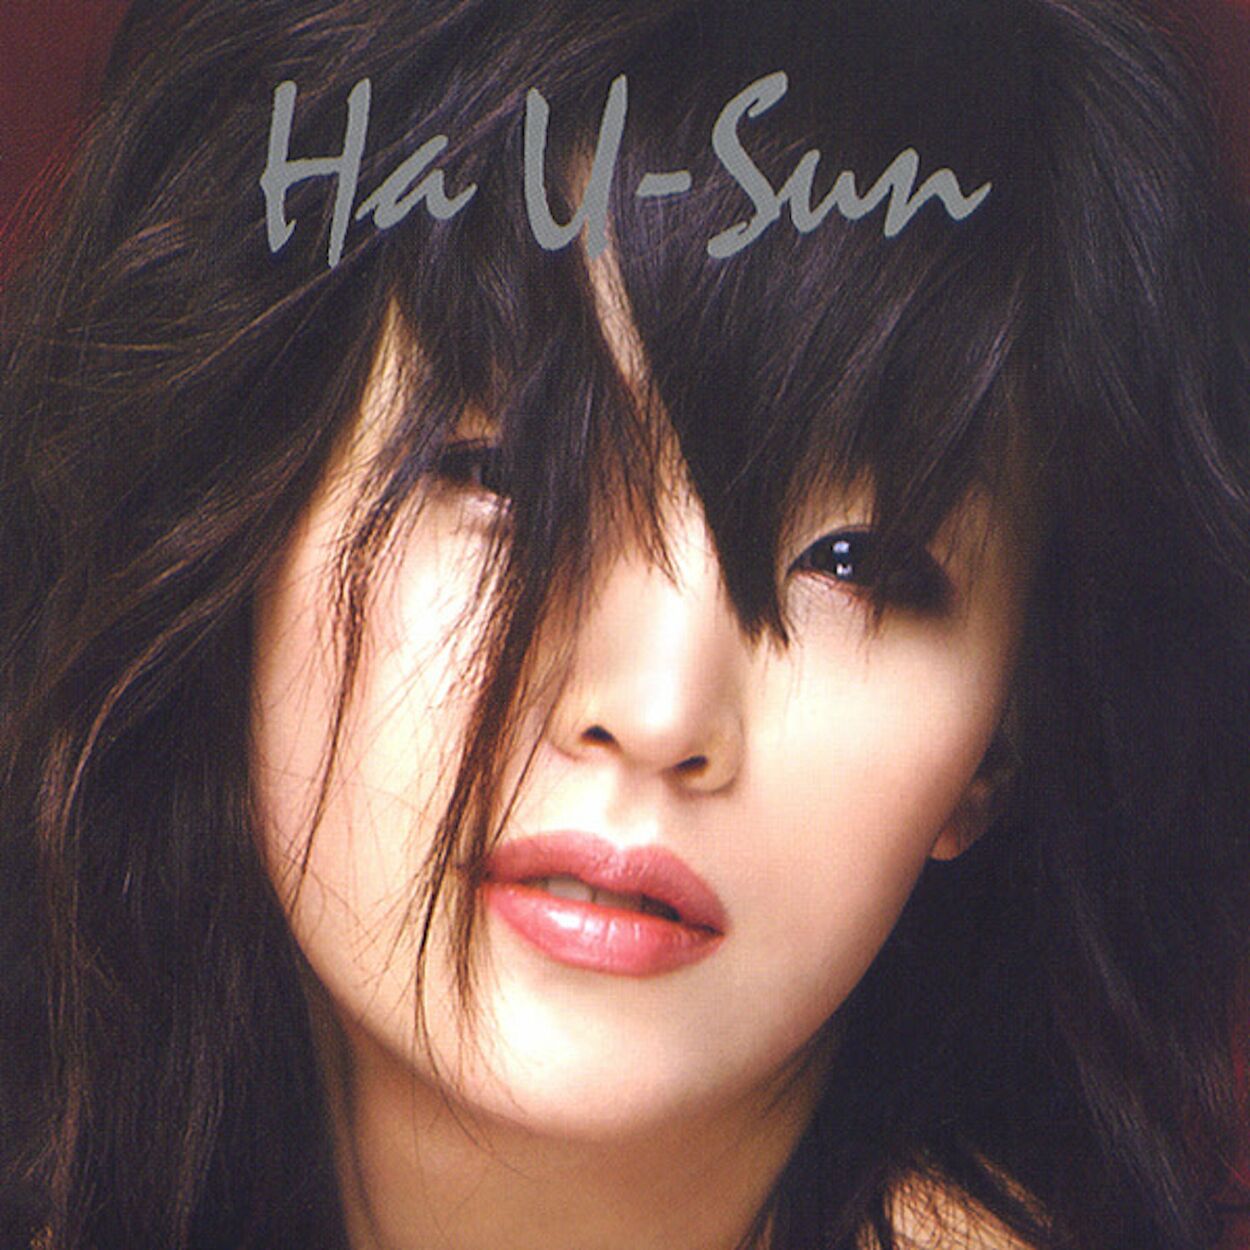 Ha You Sun – Born Again 0.5 – EP